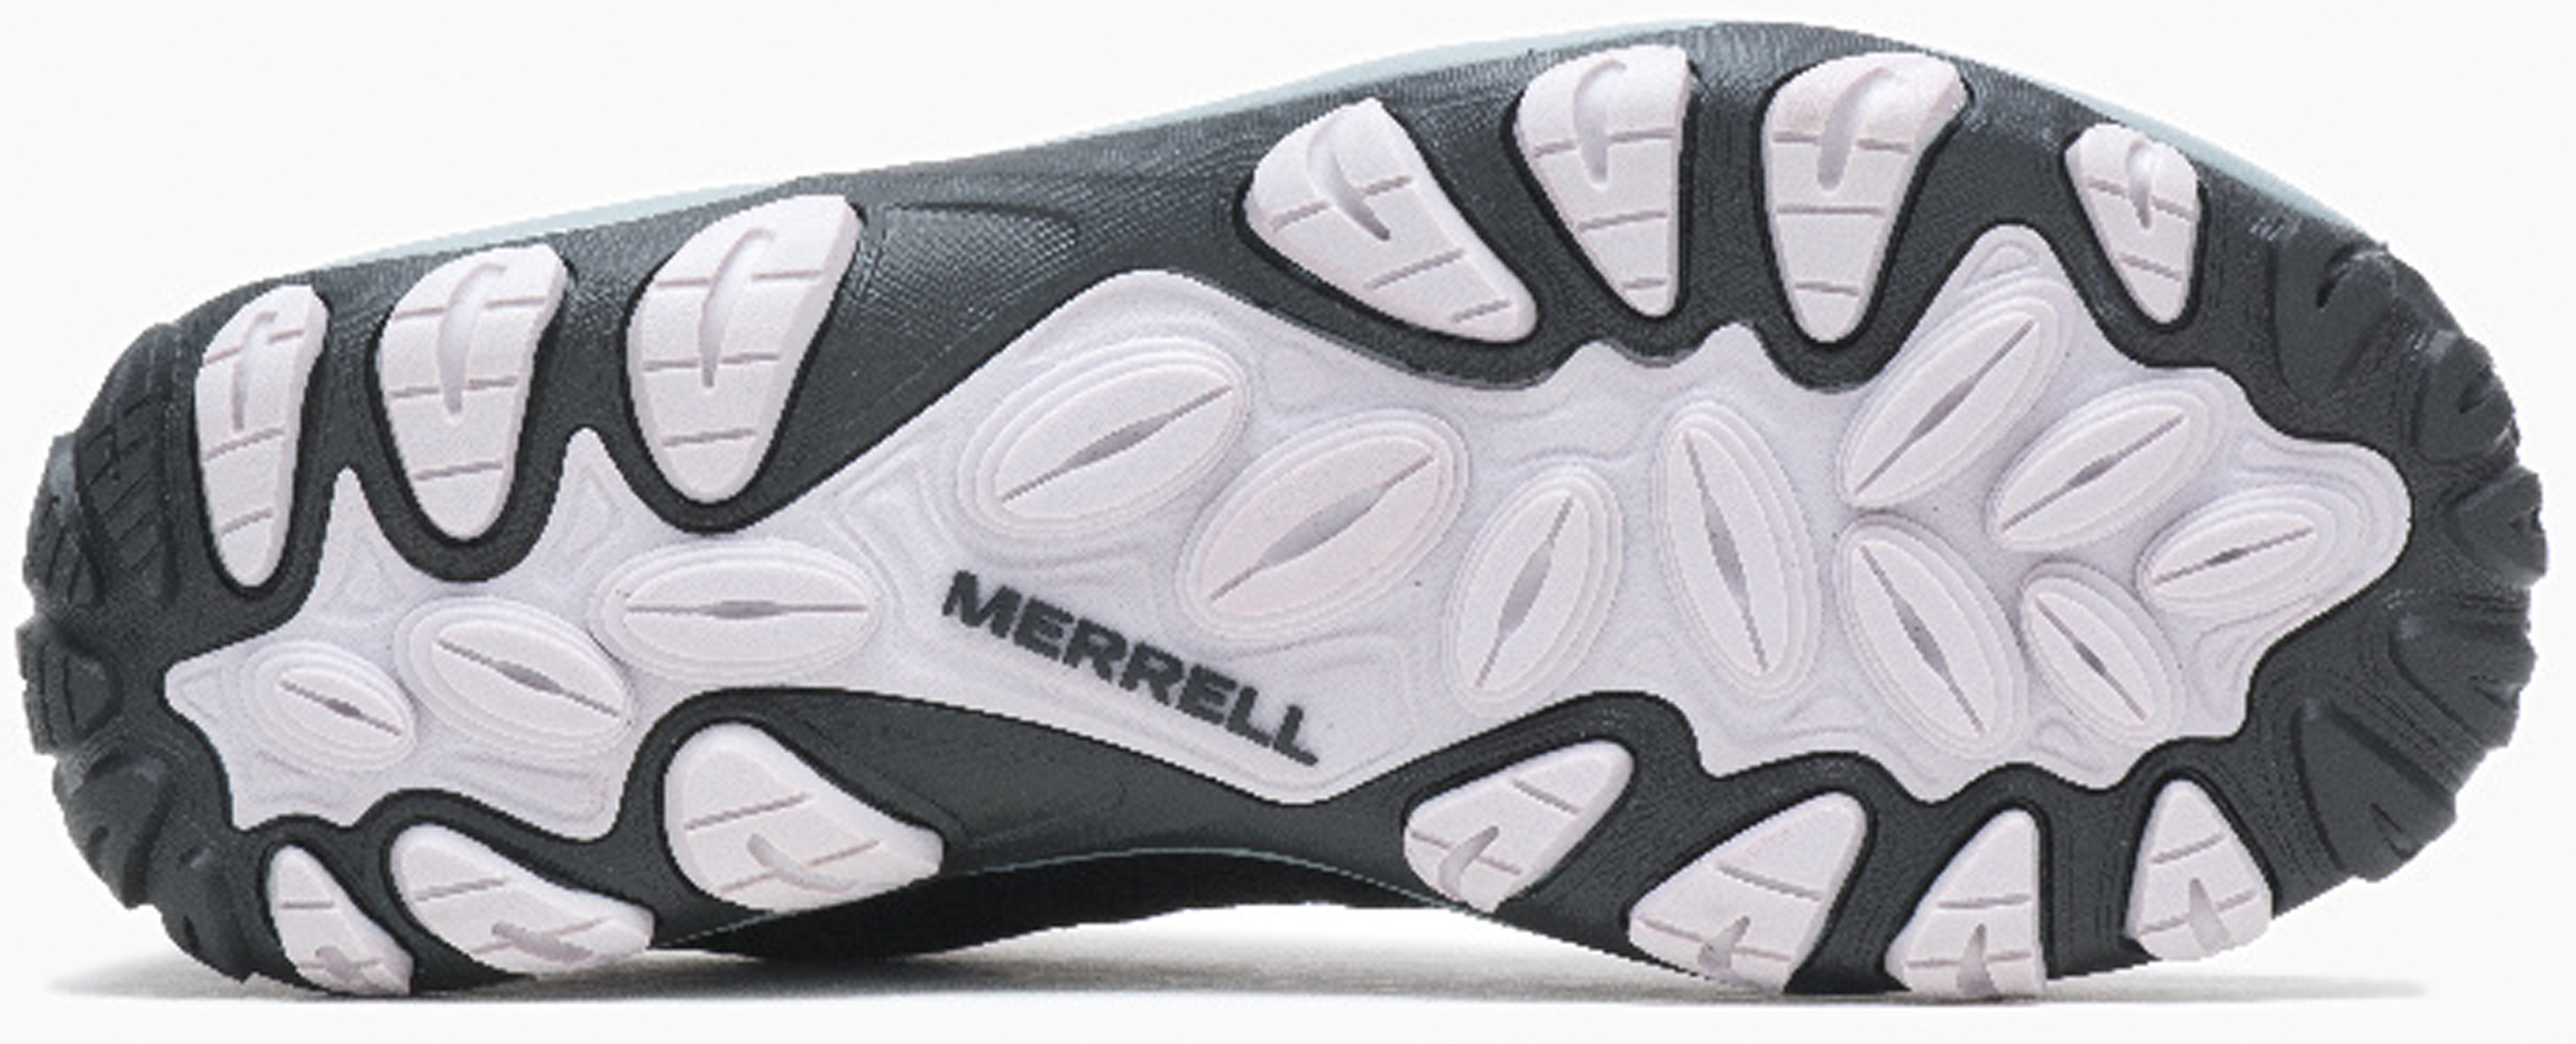 Zapatillas montaña Merrell Accentor 3 Sport GTX gris negro hombre